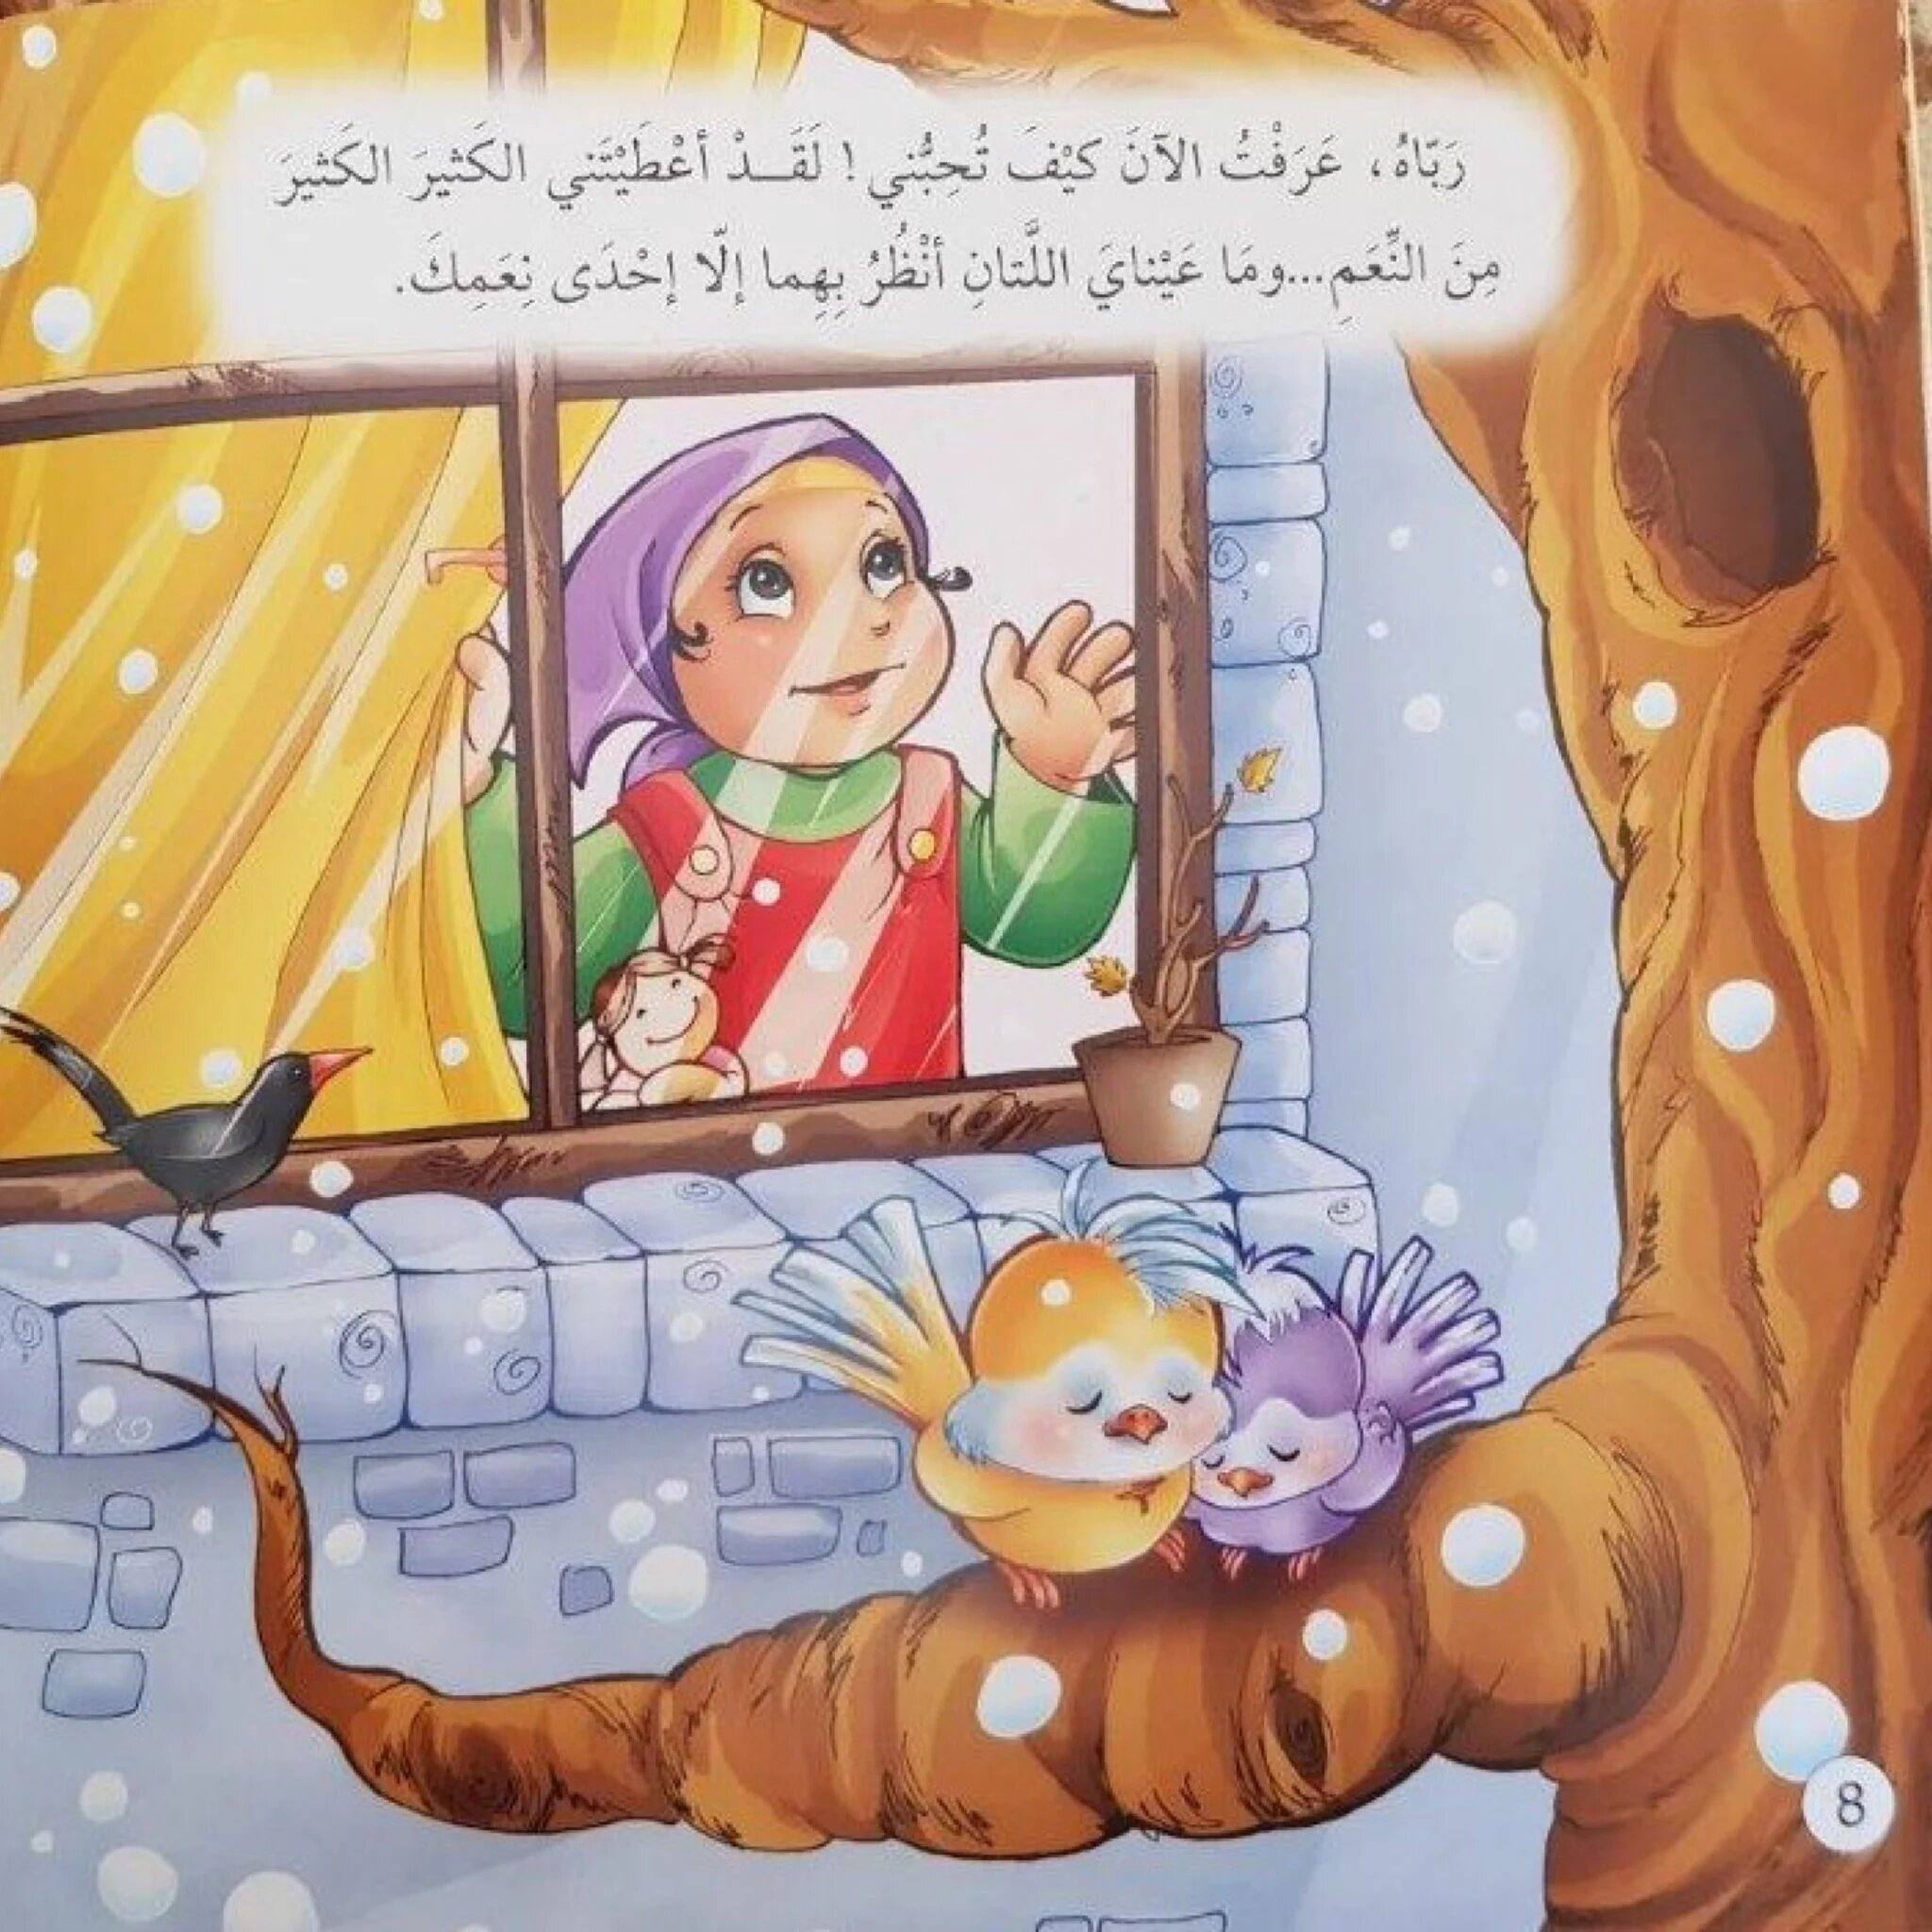 سلسلة حدثني عن ربي - لترشيد عقيد التوحيد كتب أطفال رضا الحيدري